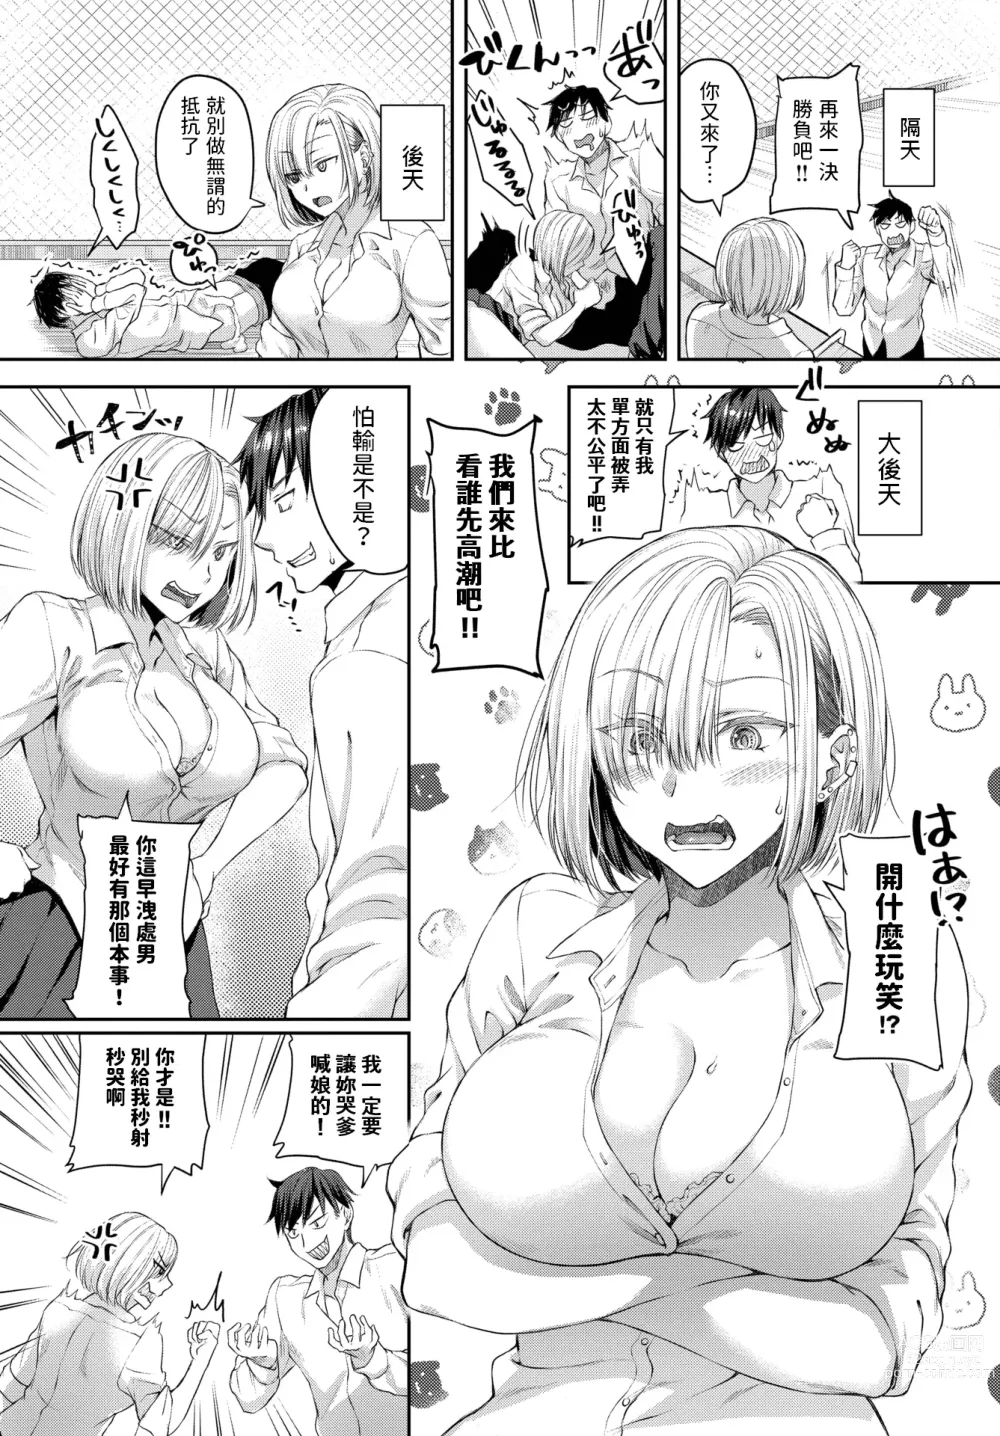 Page 7 of manga Okujou Rendezvous